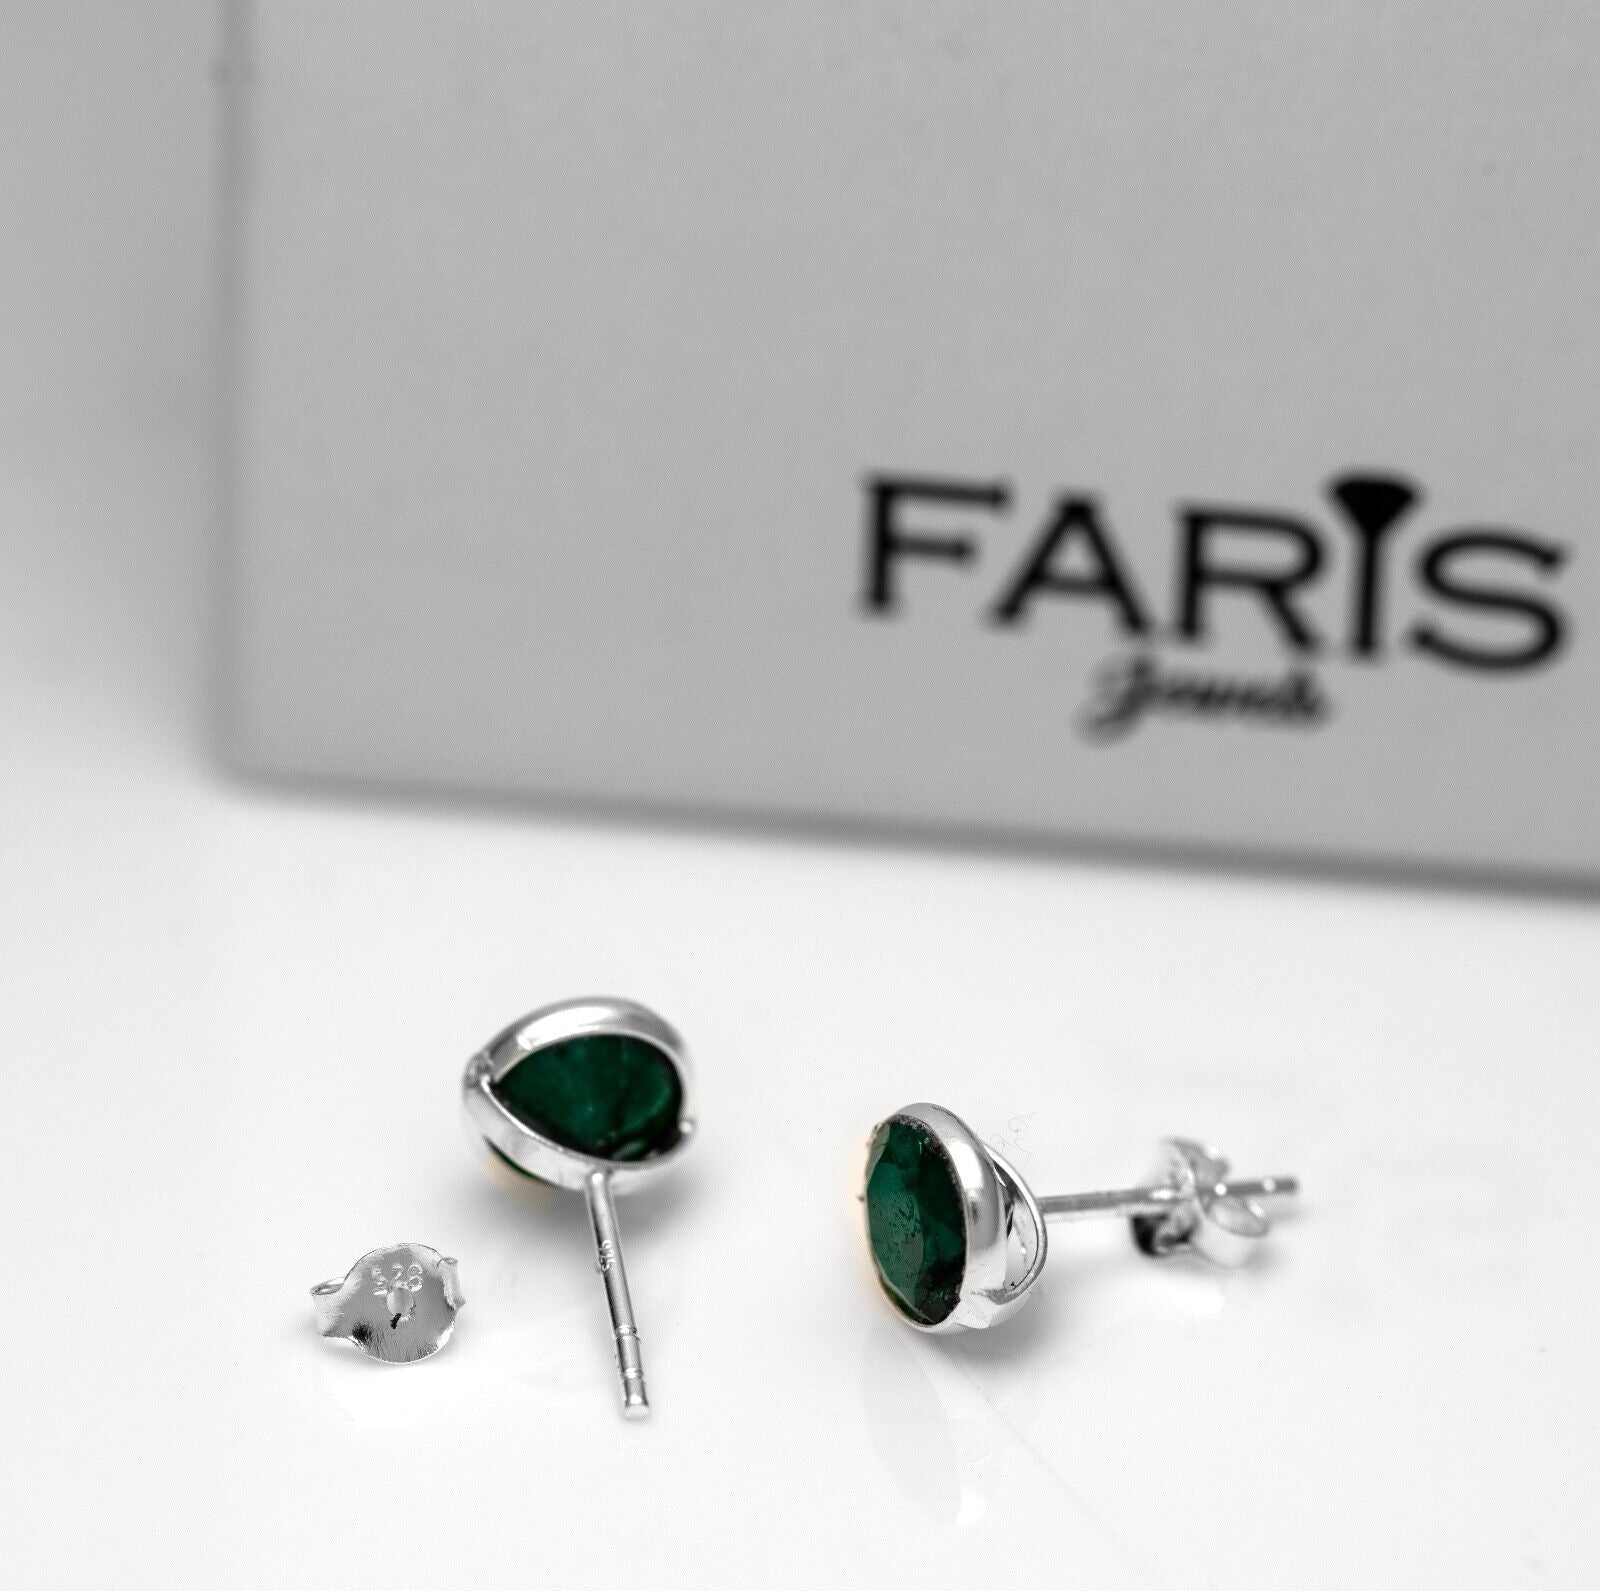 Genuine 925 Sterling Silver Round Emerald Ladies Earrings Studs Gemstone Gift